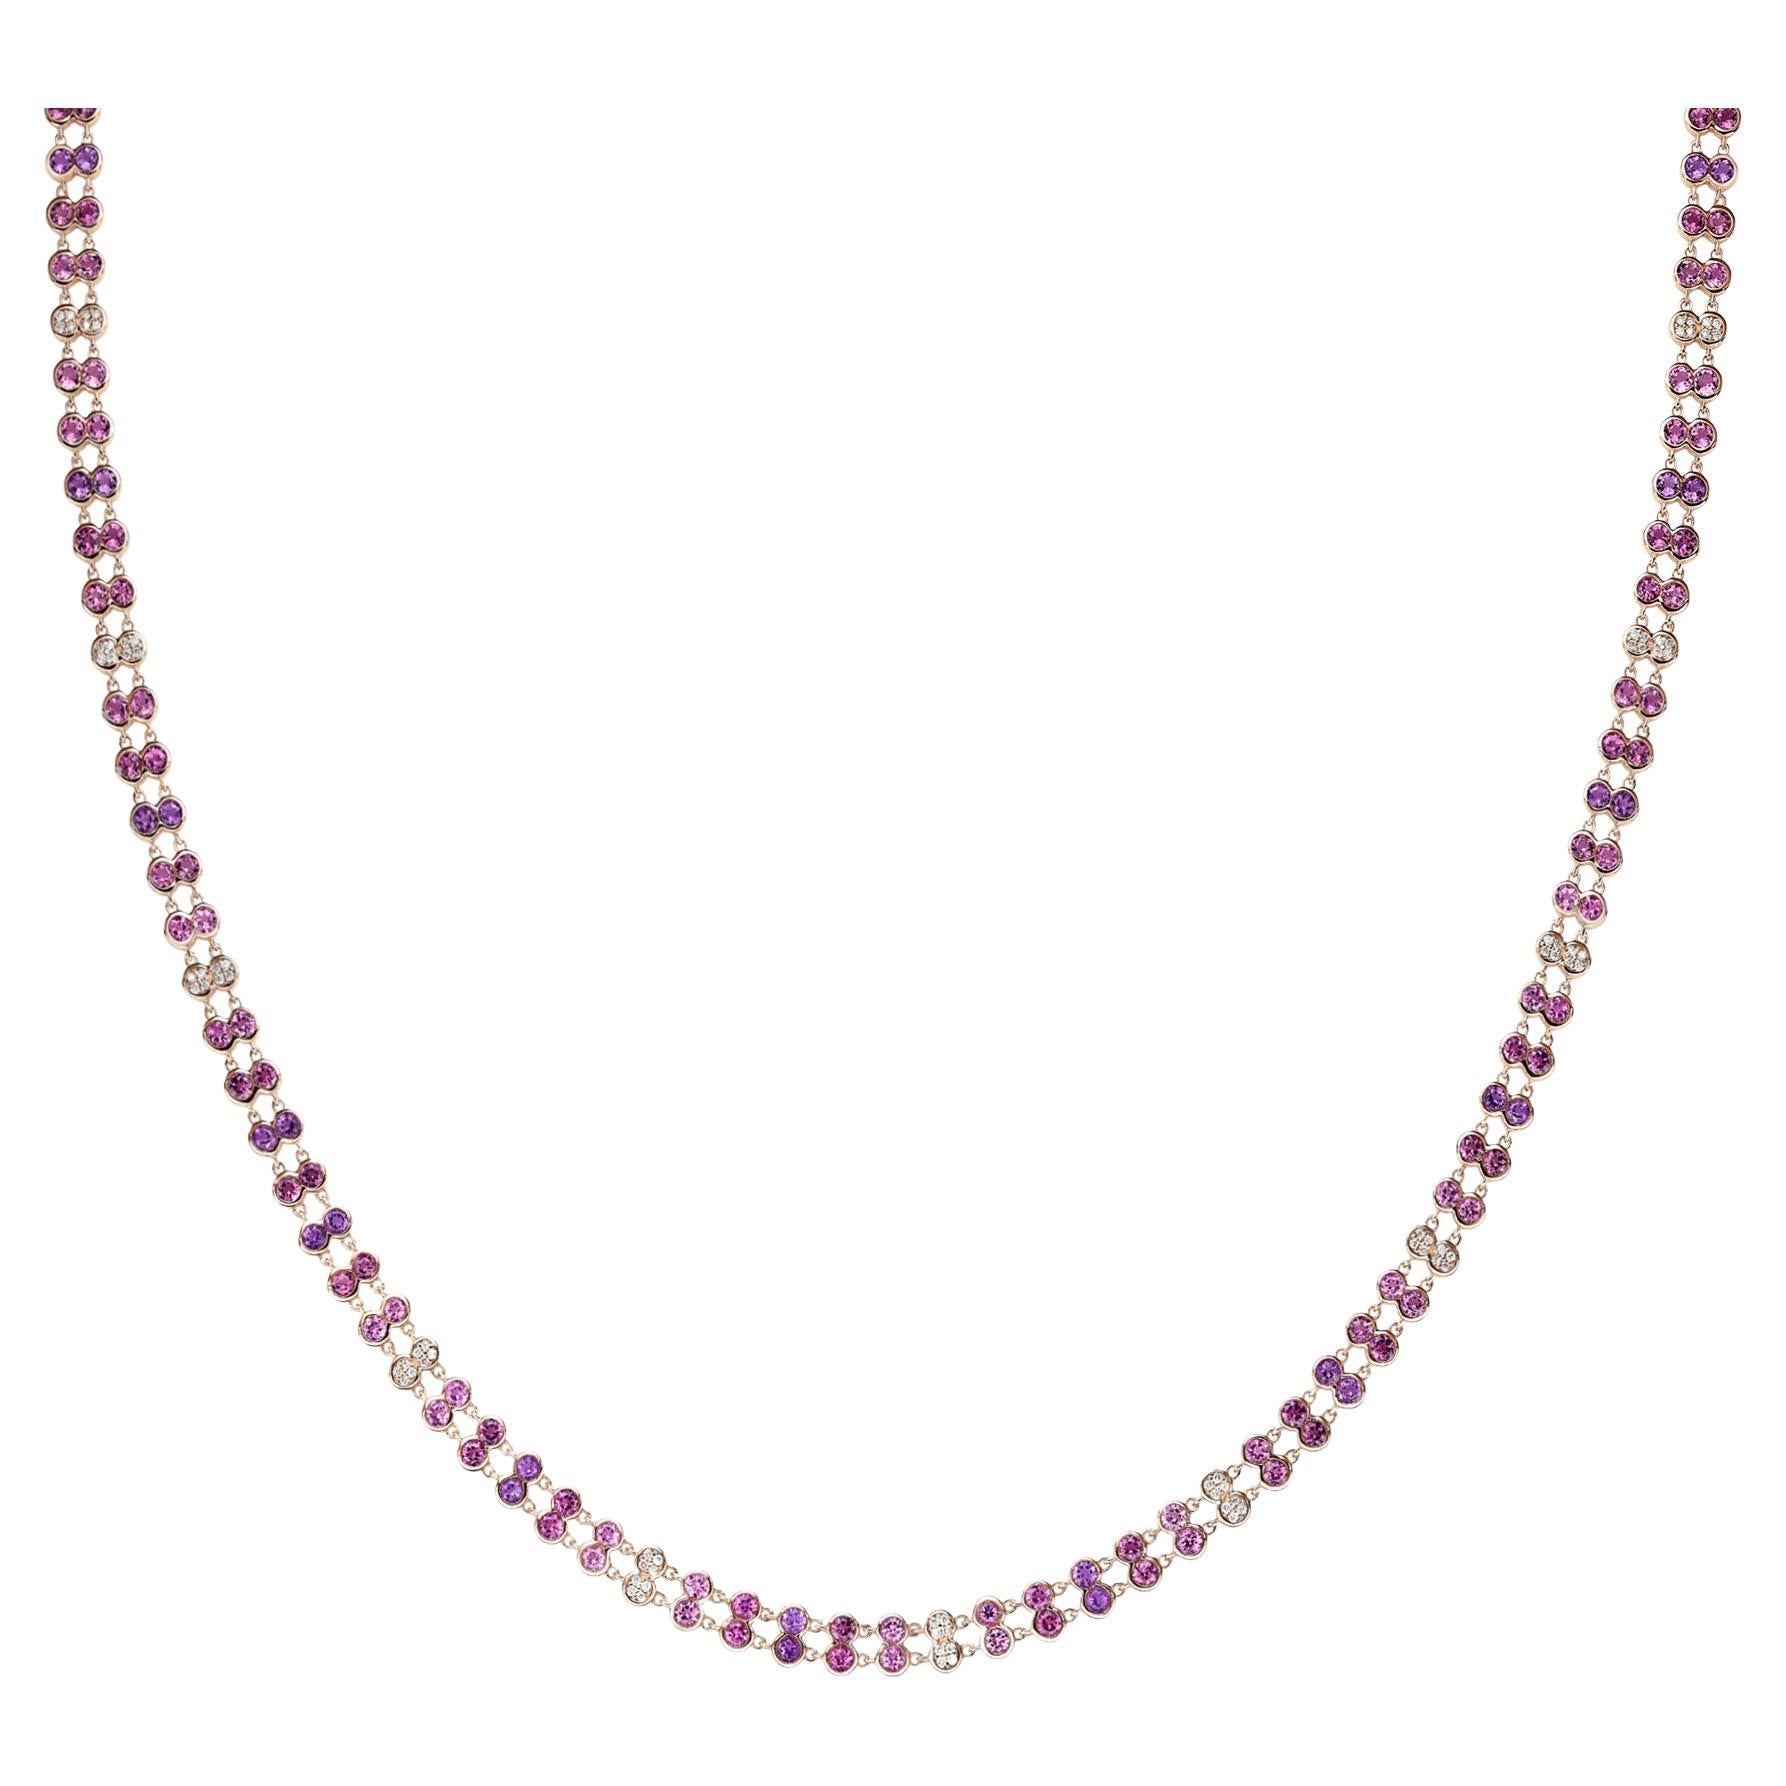 Halskette aus 18 Karat Roségold mit Amethyst, rosa Turmalin und weißen Diamanten.